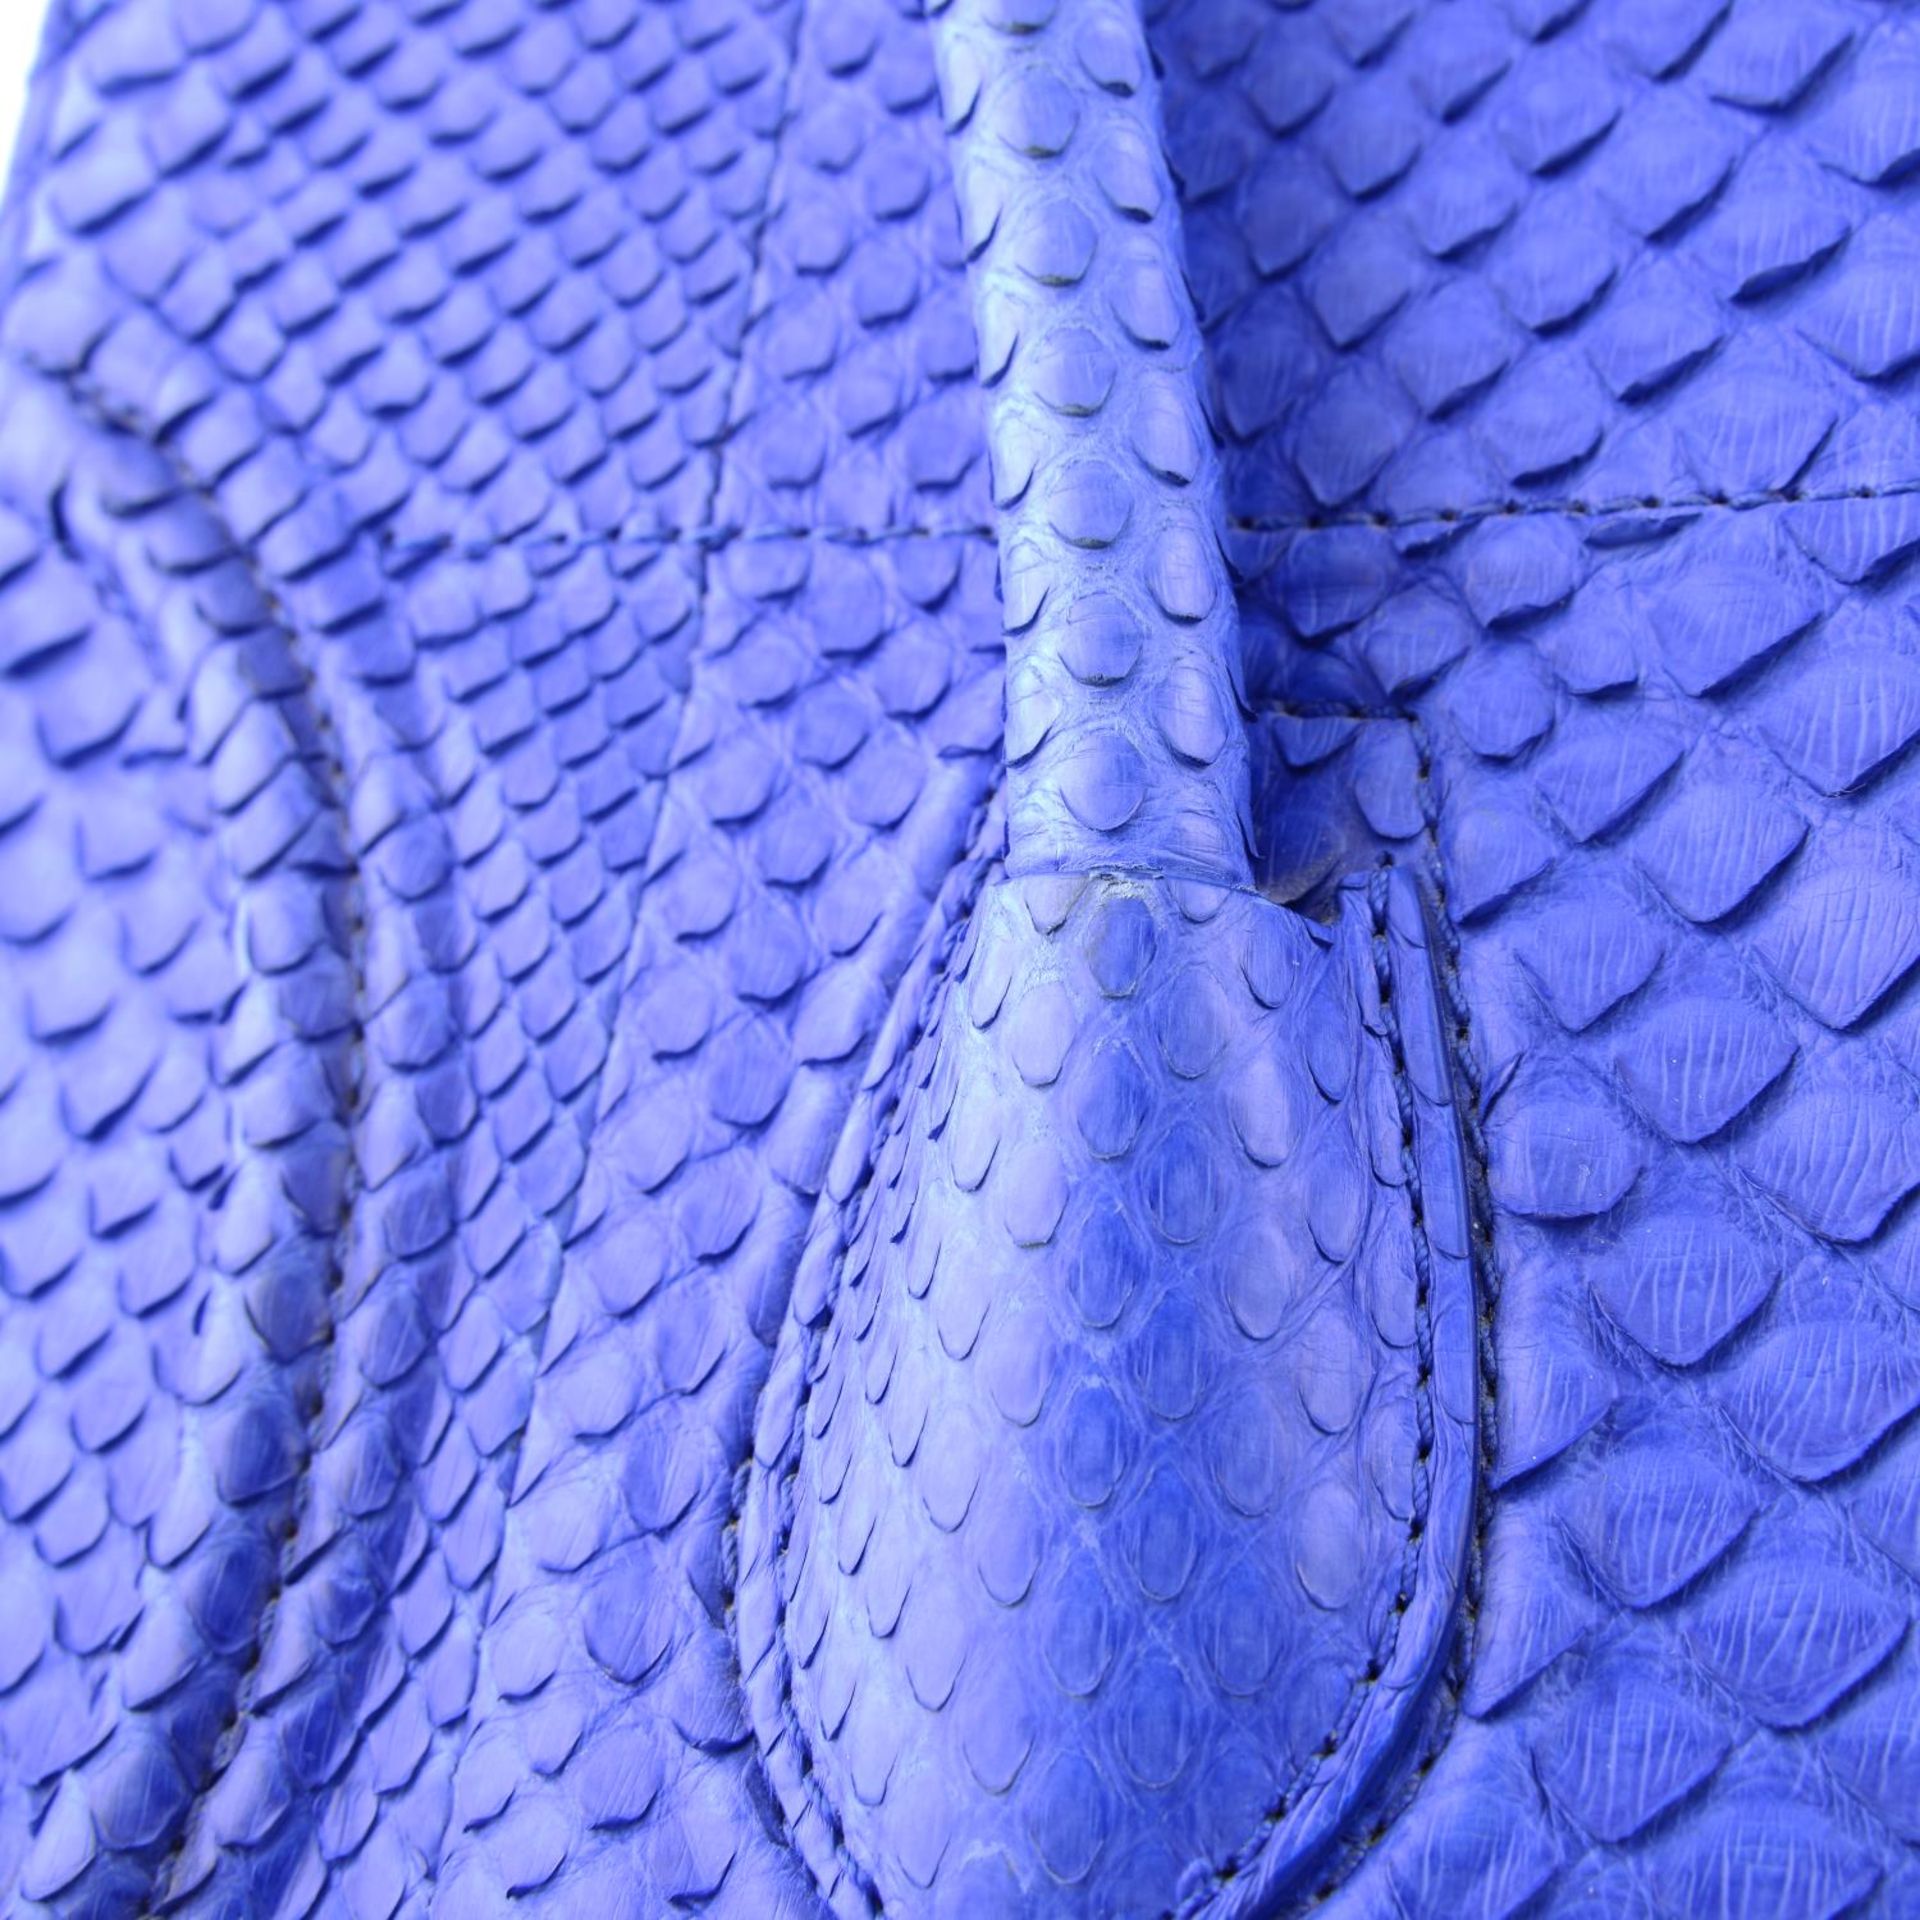 CÉLINE - a blue python skin Phantom handbag. - Image 6 of 9